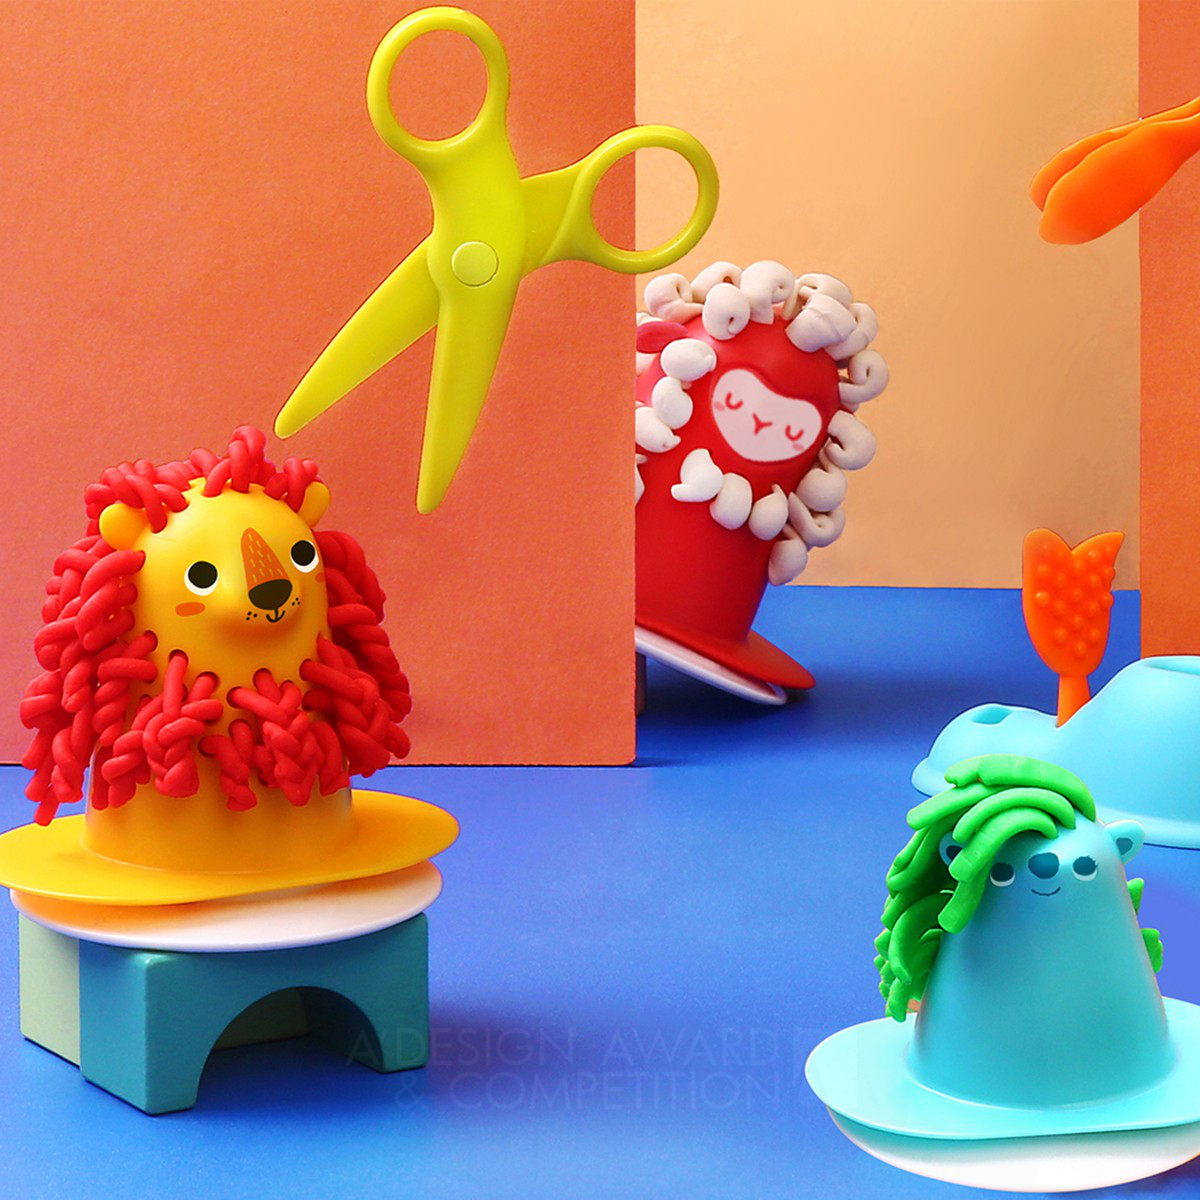 Einzigartiges Spielzeug für kreative Kinder: Das Dough Hair Salon